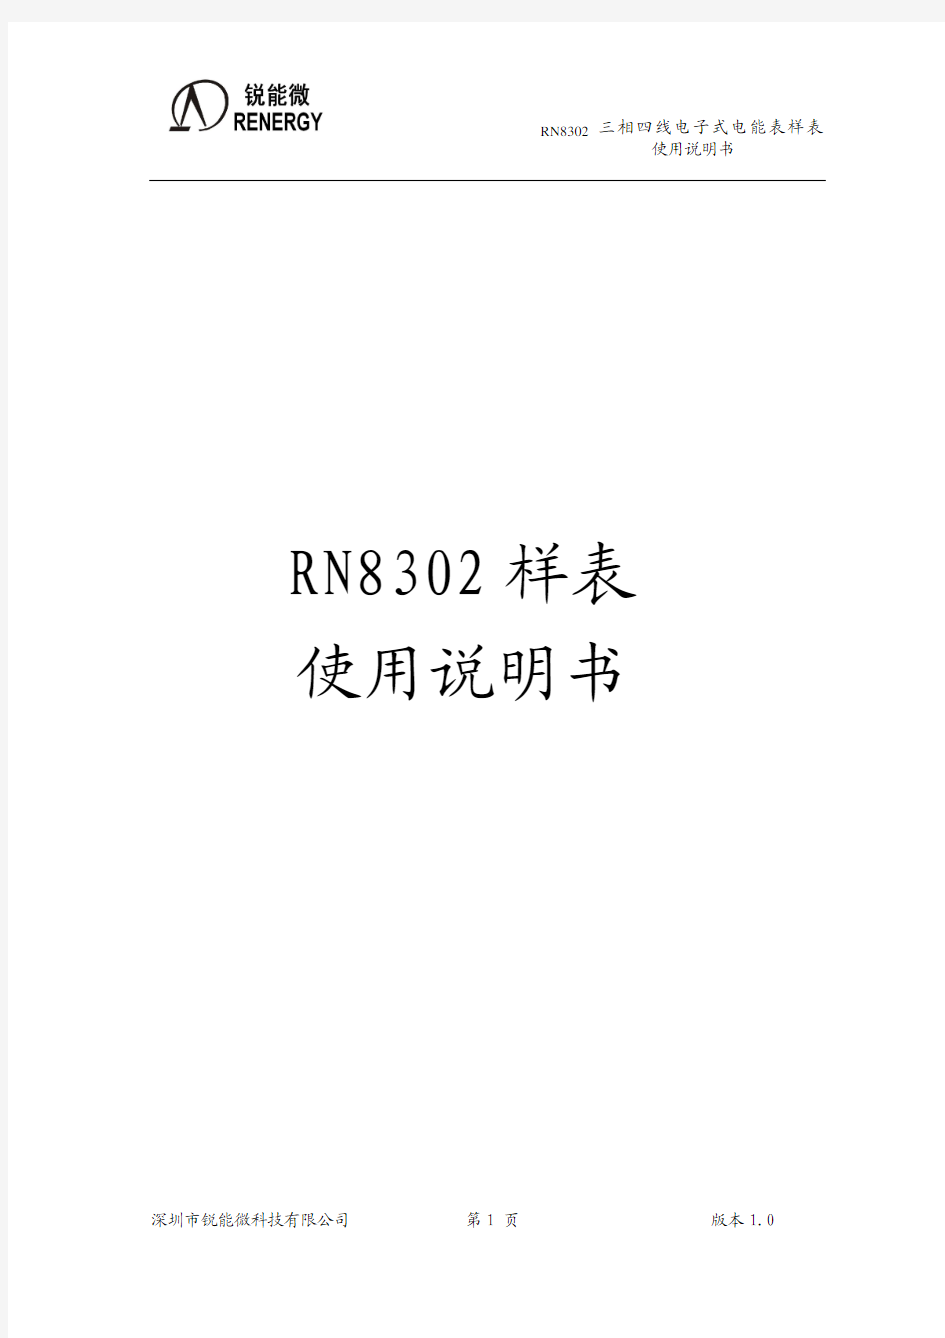 RN8302 三相四线电子式电能表使用说明书 2011.5.30